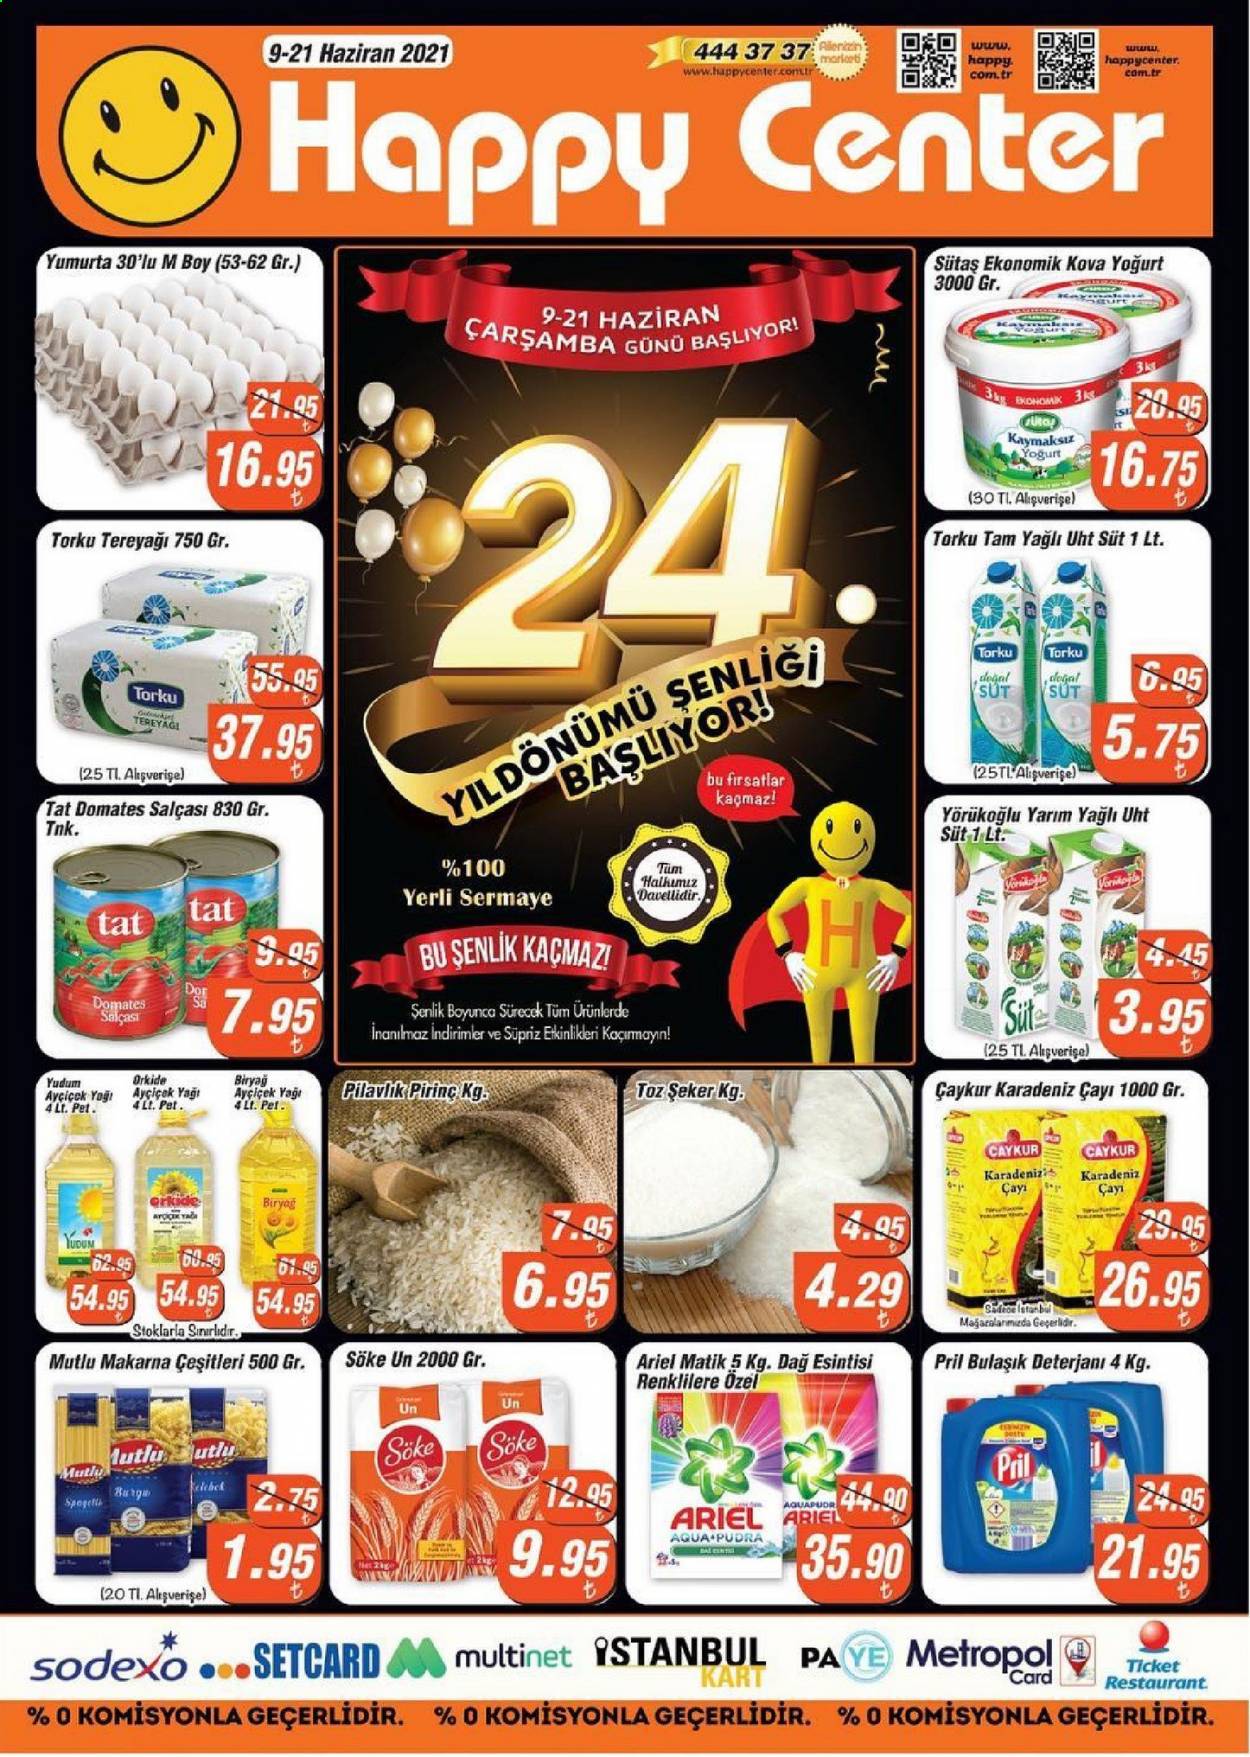 thumbnail - Happy Center aktüel ürünler, broşür  - 6.9.2021 - 6.21.2021 - Satıştaki ürünler - makarna, Sütas, yoğurt, süt, yumurta, tereyağı, Torku, domates salça, pirinç, ayçiçek yağı, Biryağ, şeker. Sayfa 1.